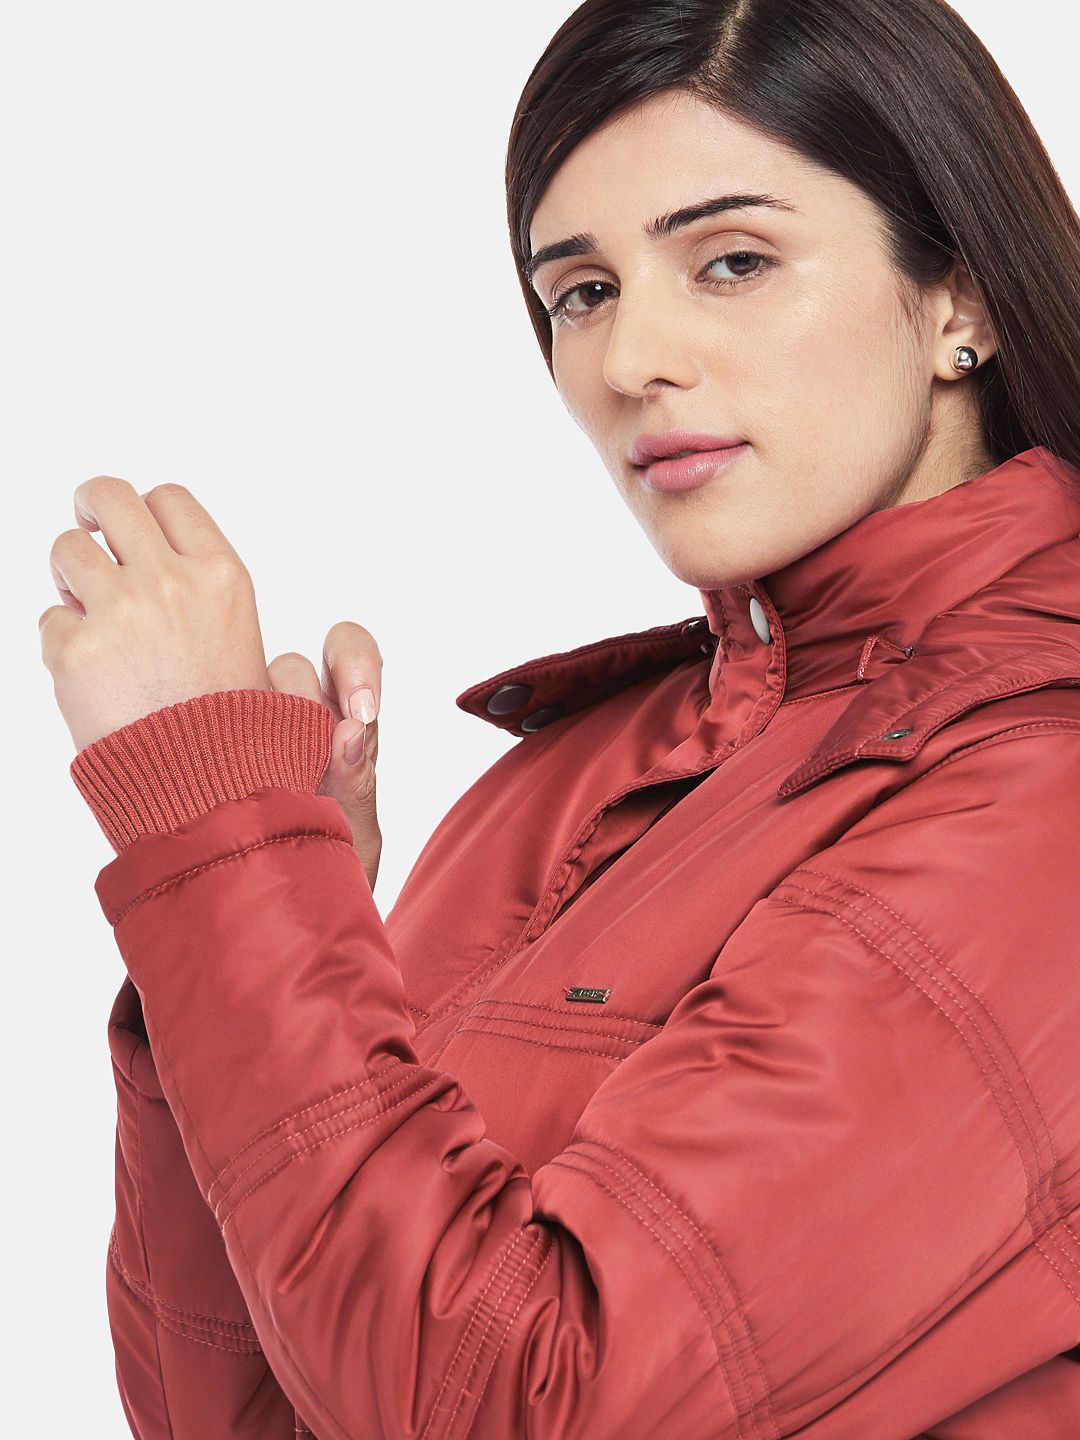 Red Fleece Lined Hooded Parka Jacket | Women